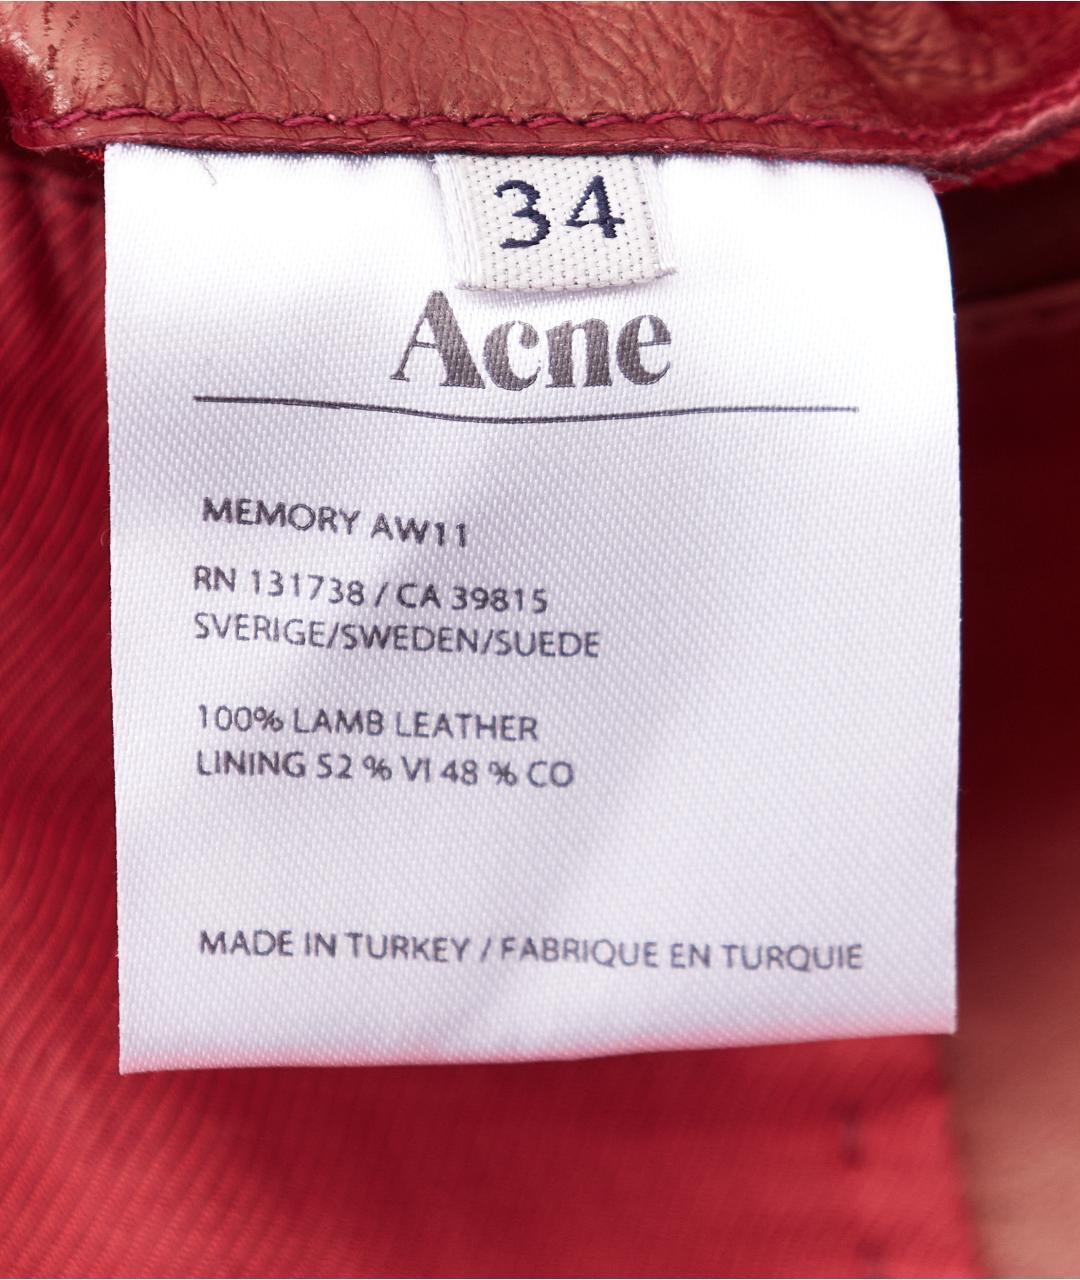 ACNE STUDIOS Бордовый кожаный жилет, фото 5